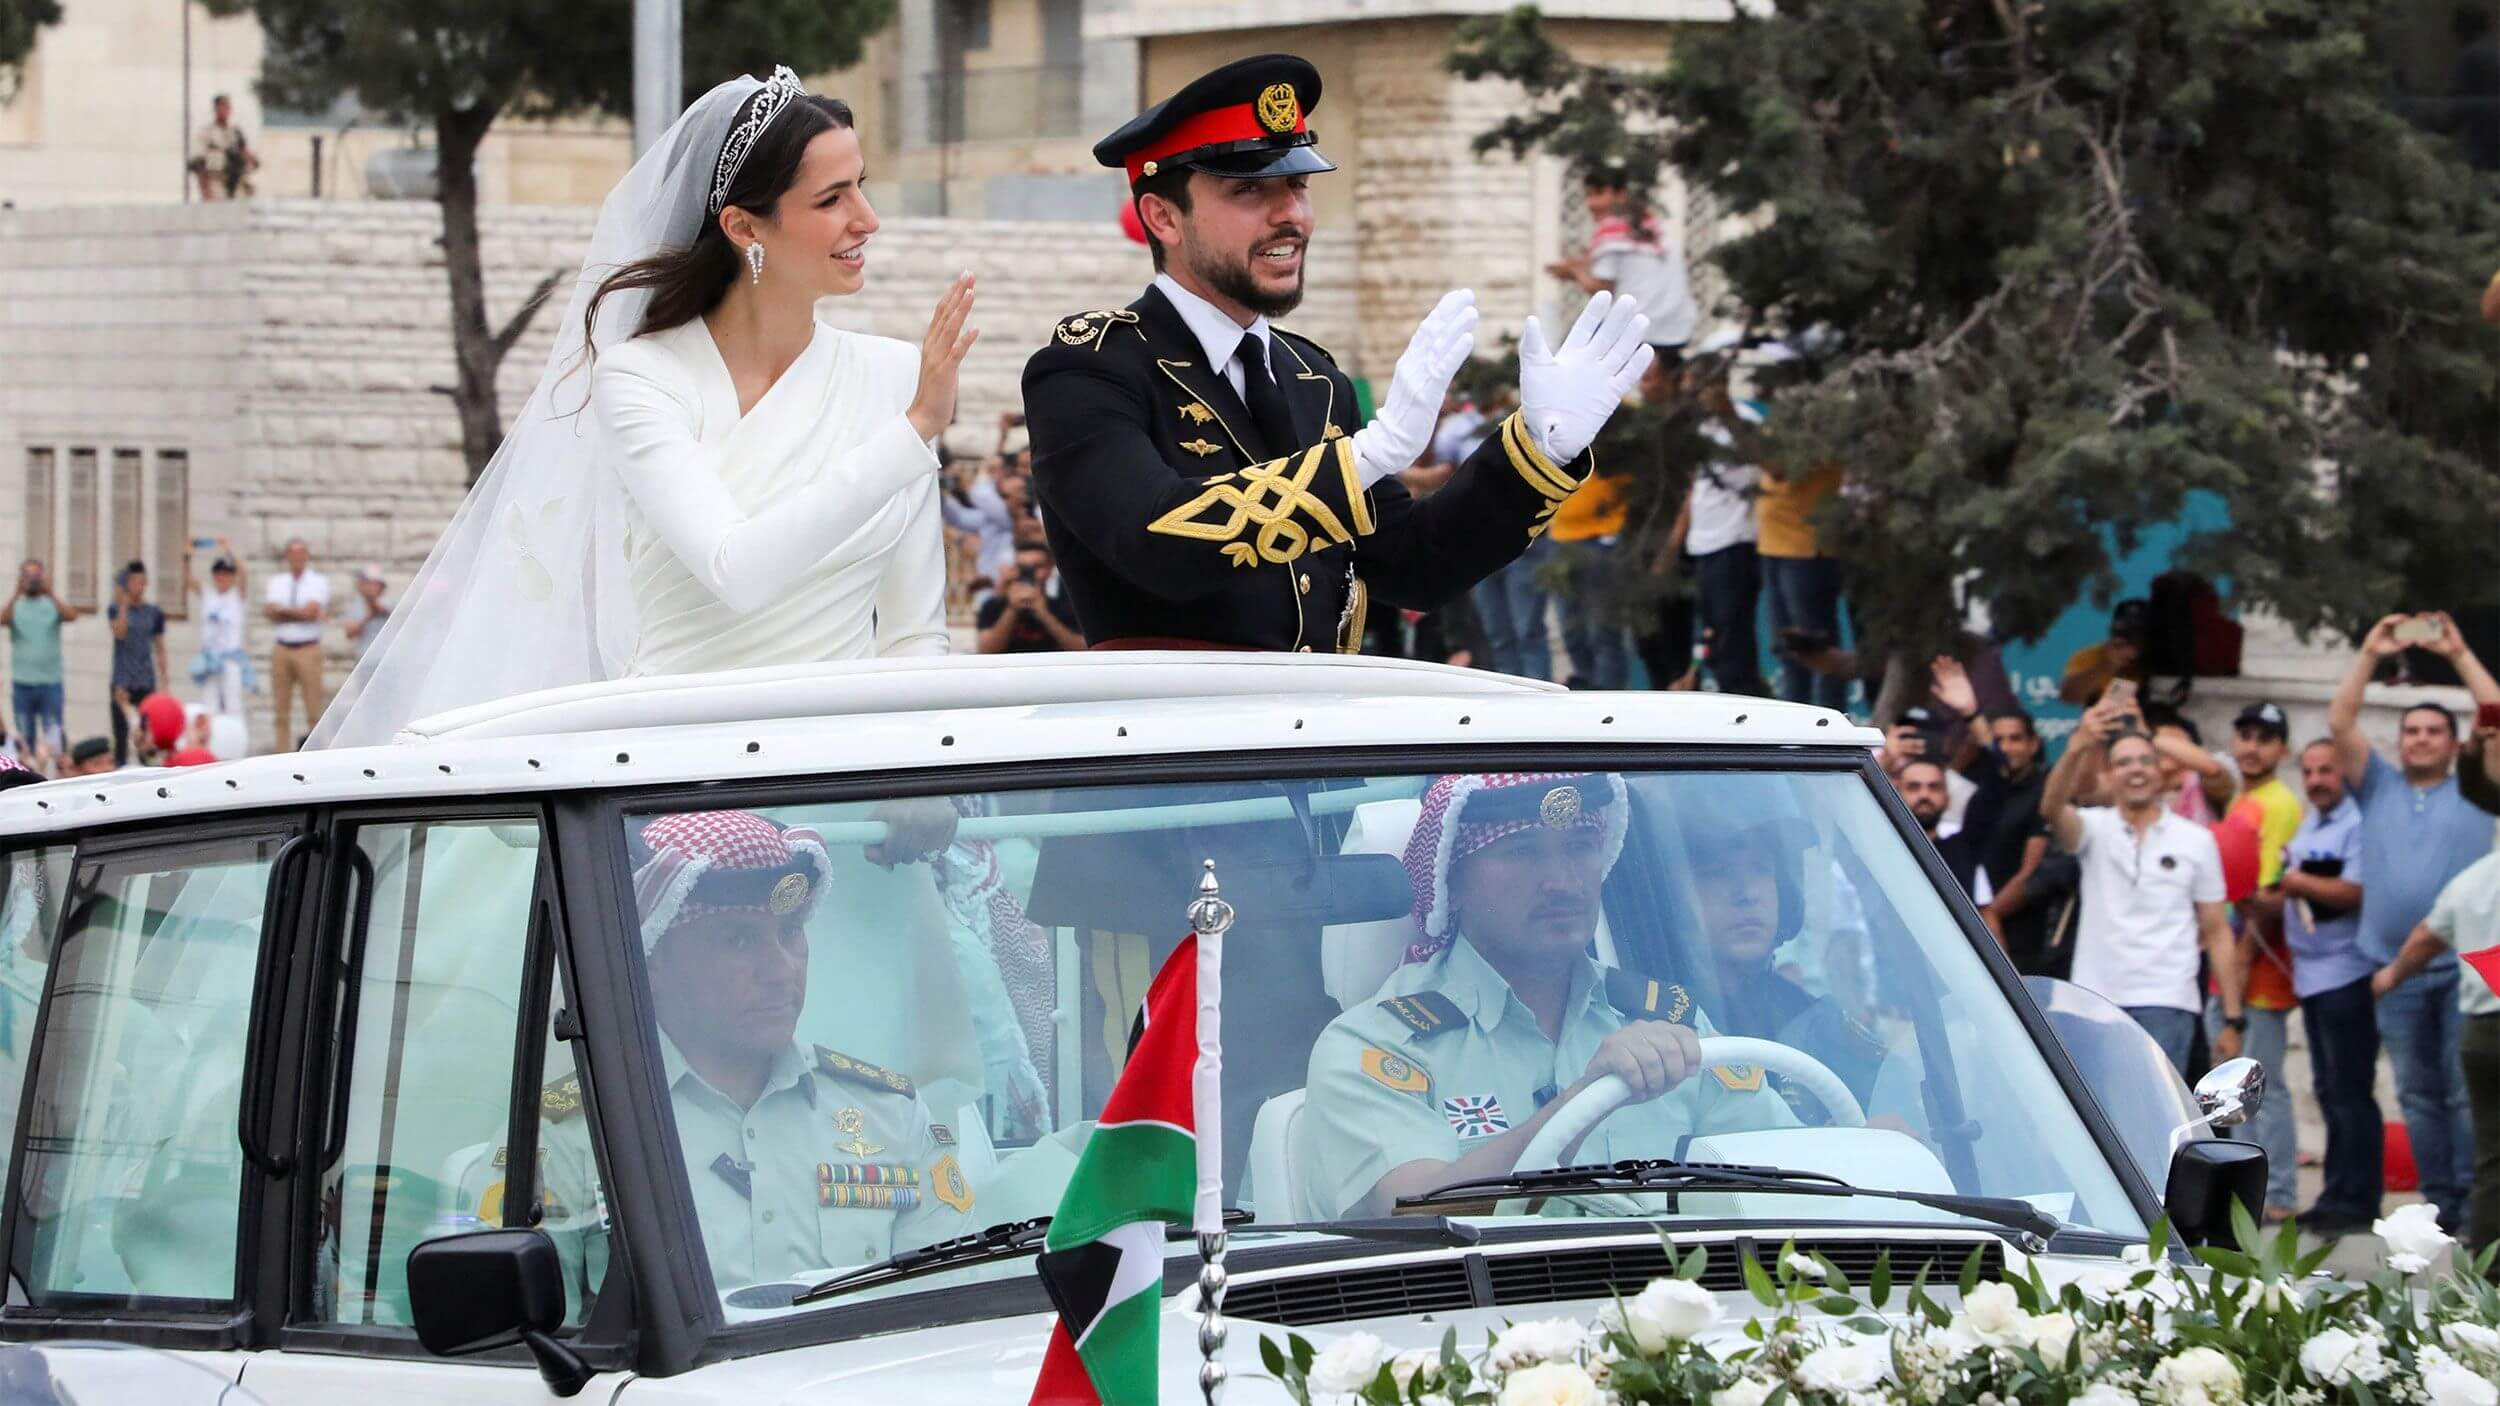 Jordánsky korunný princ sa oženil so saudskoarabskou rodinou s väzbami na MBS